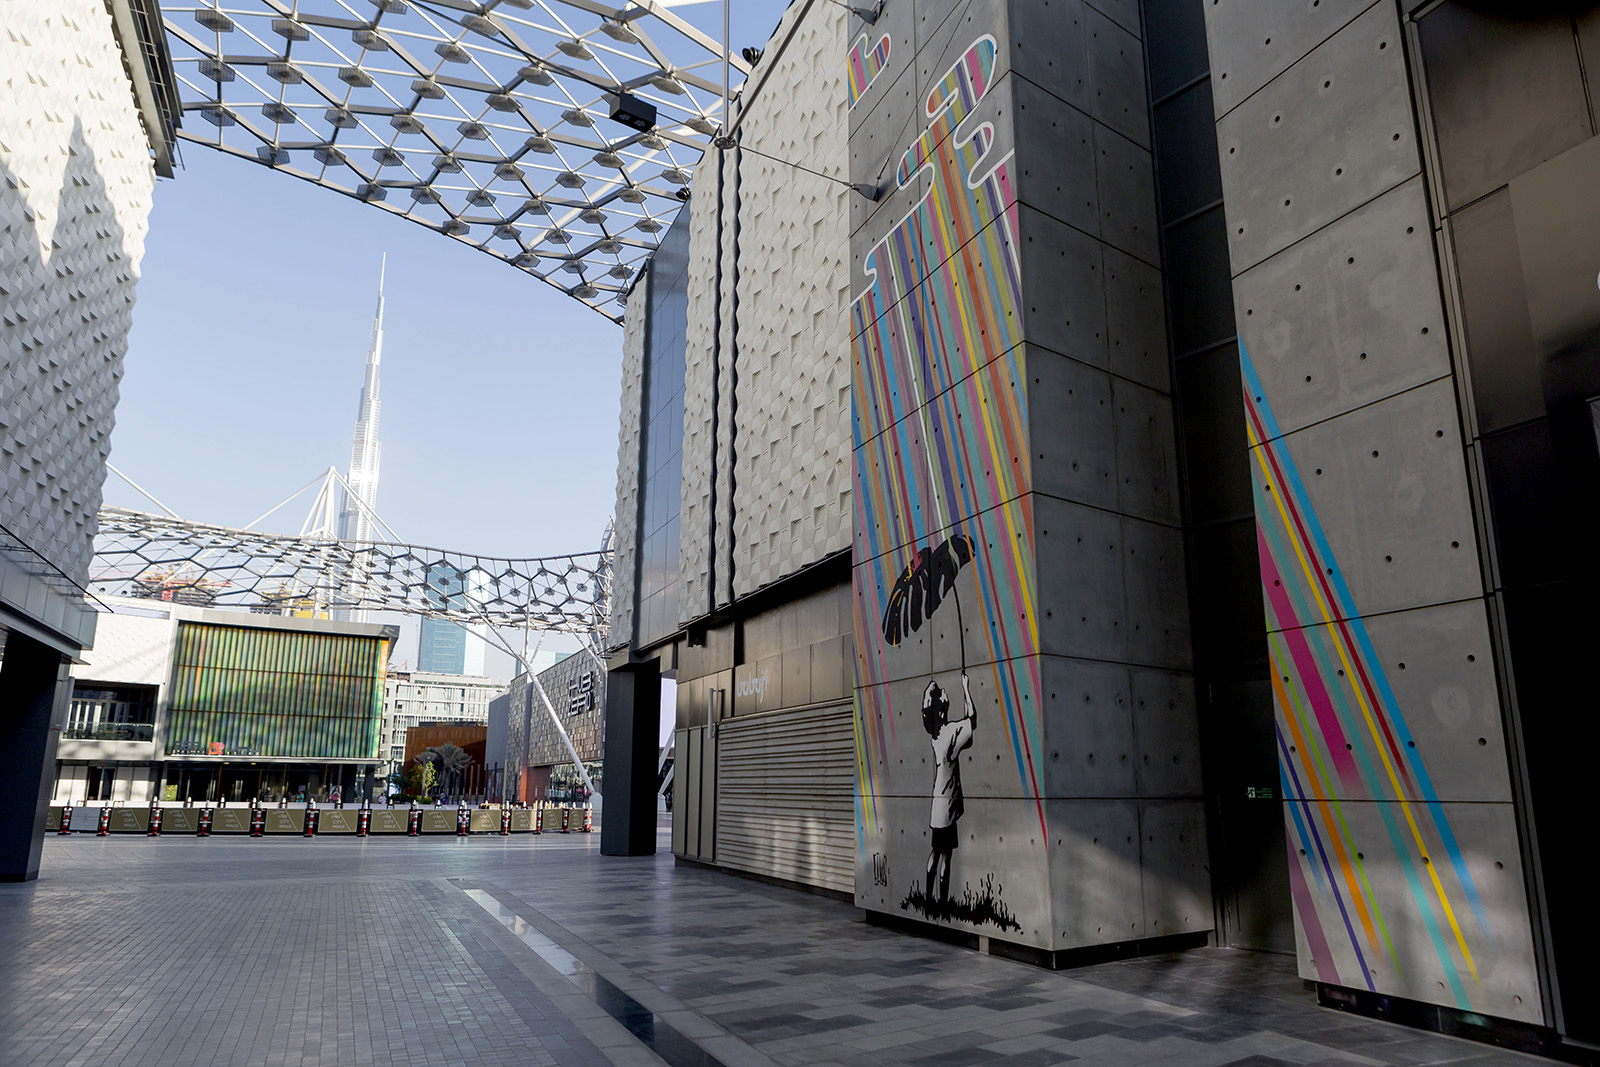 Eelus's mural for Dubai Walls